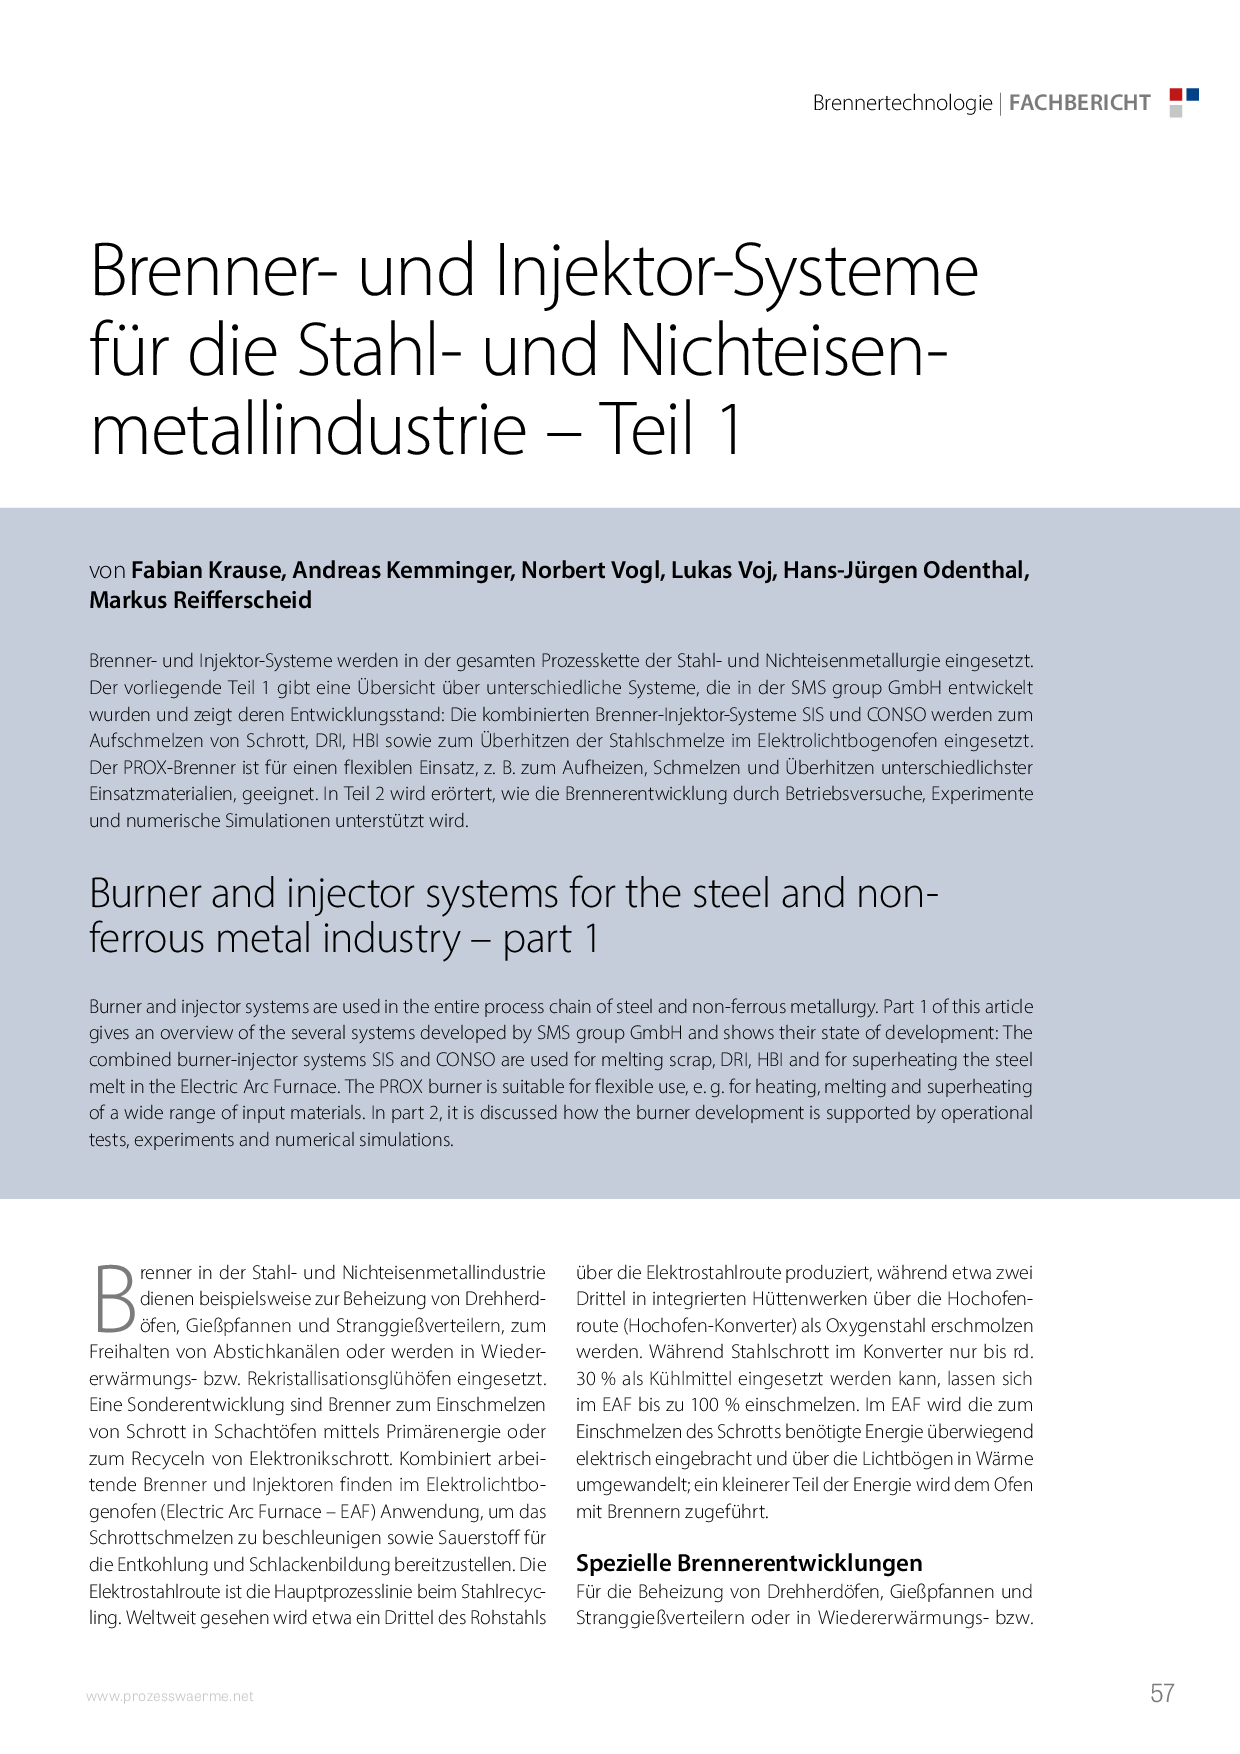 Brenner- und Injektor-Systeme für die Stahl- und Nichteisenmetallindustrie – Teil 1